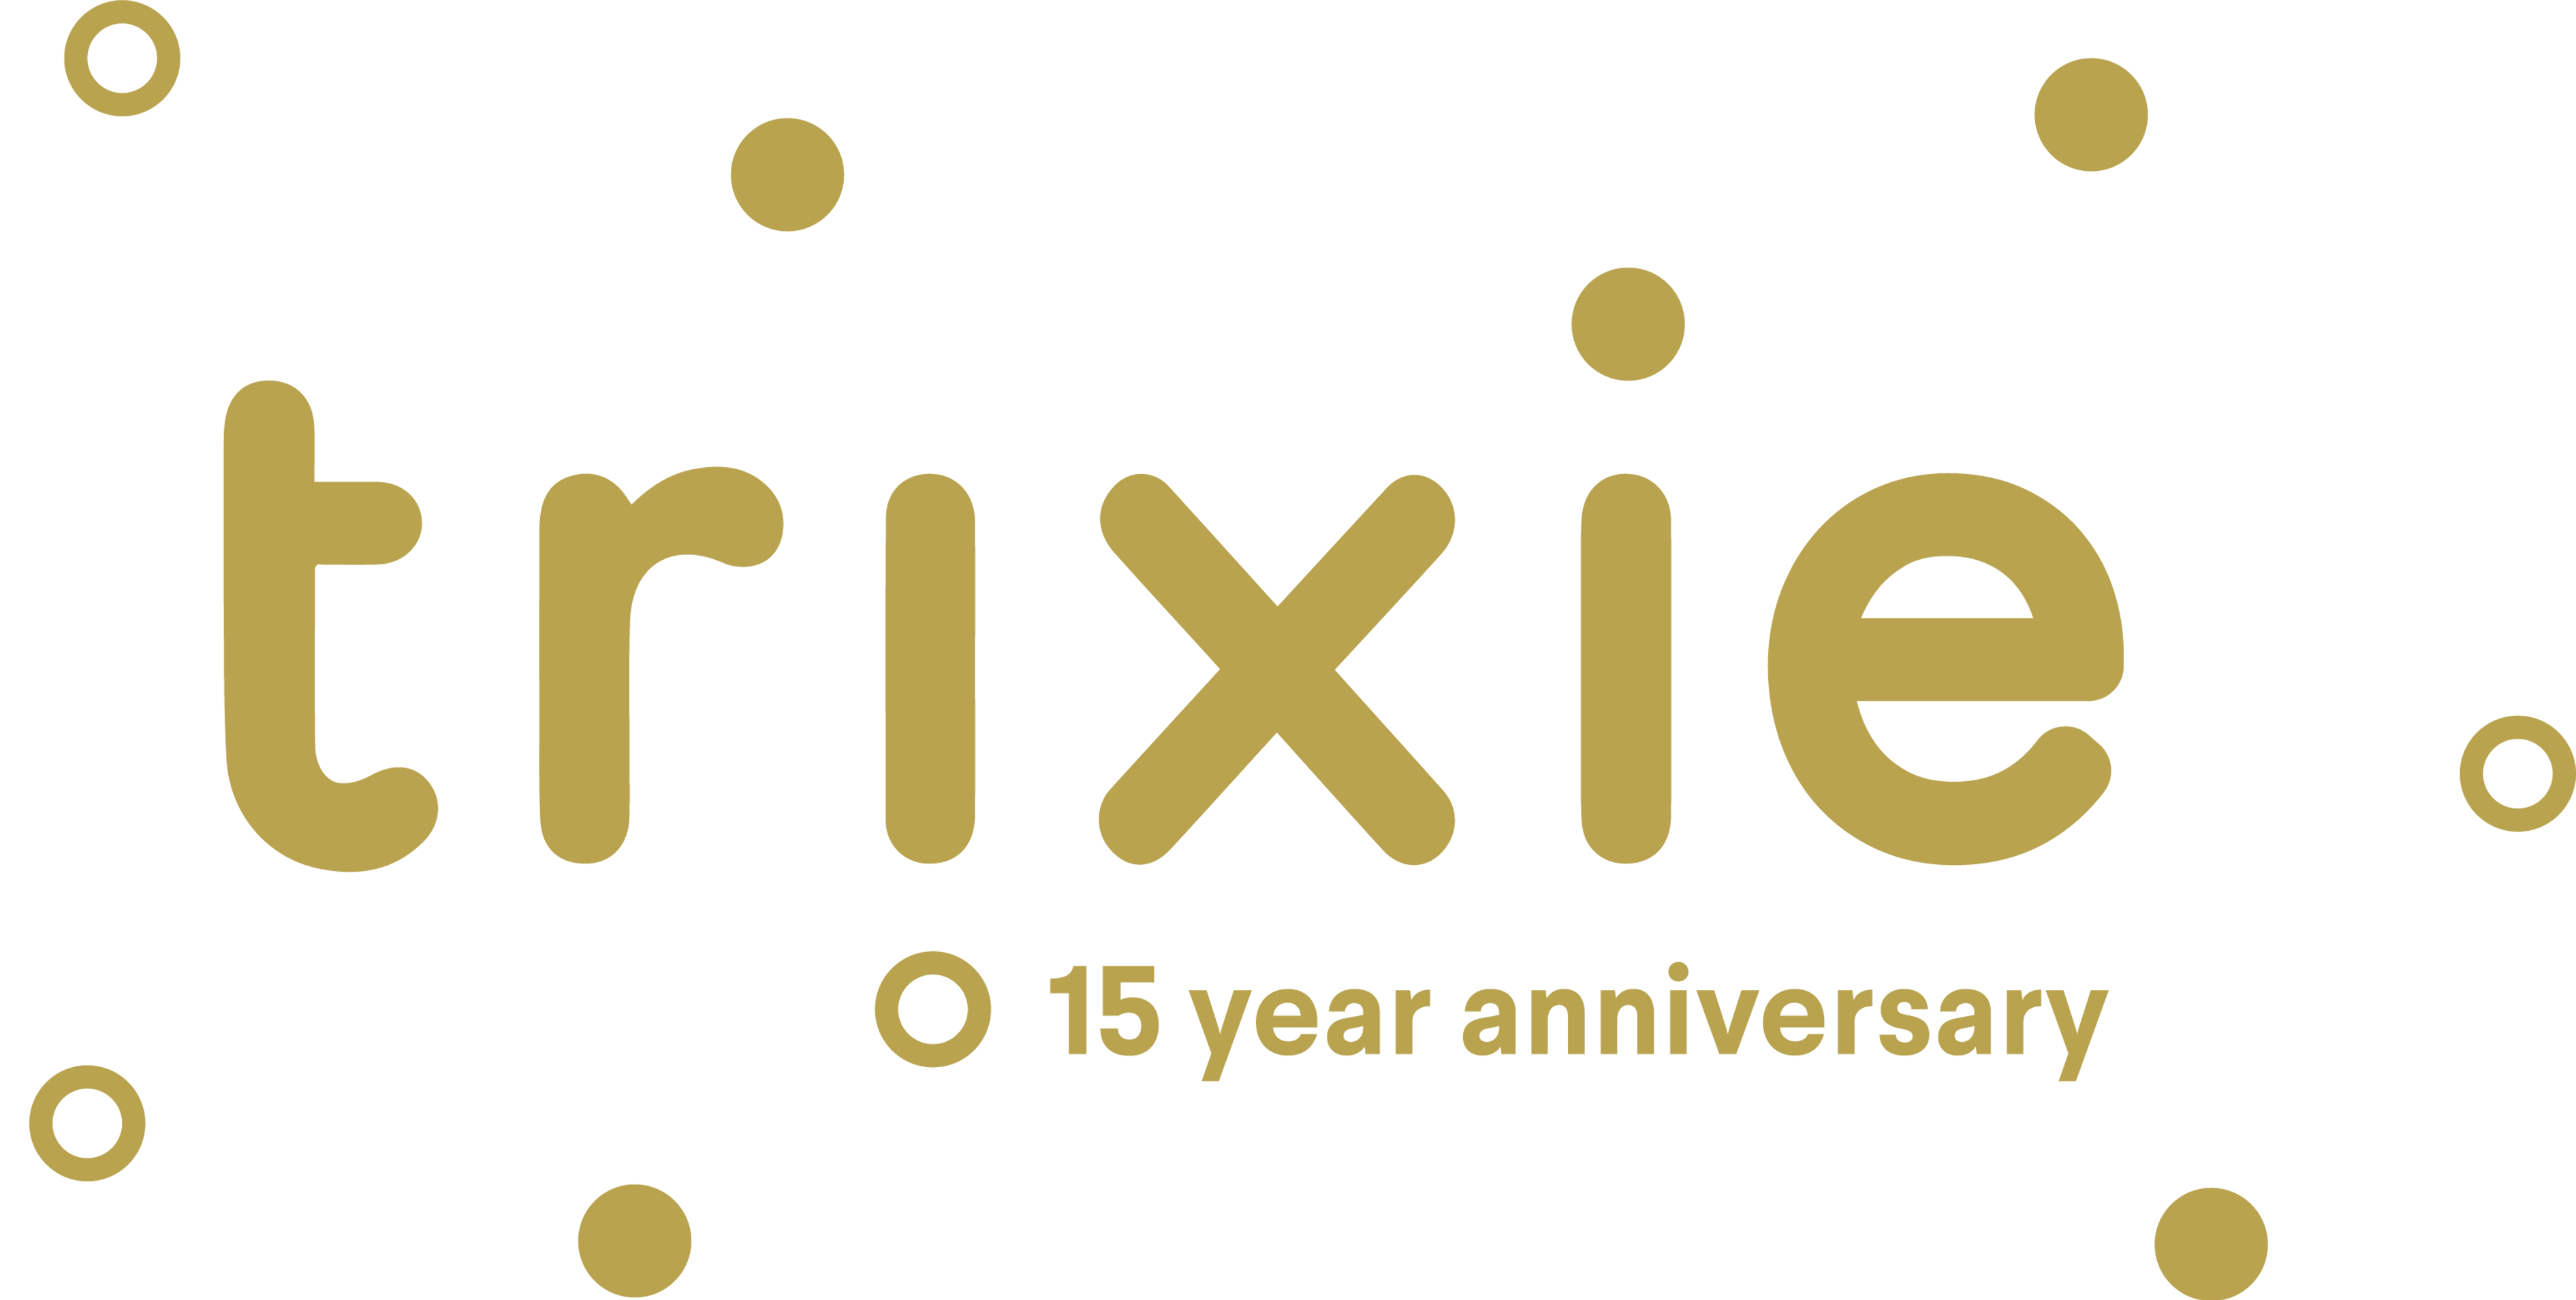 Trixie logo